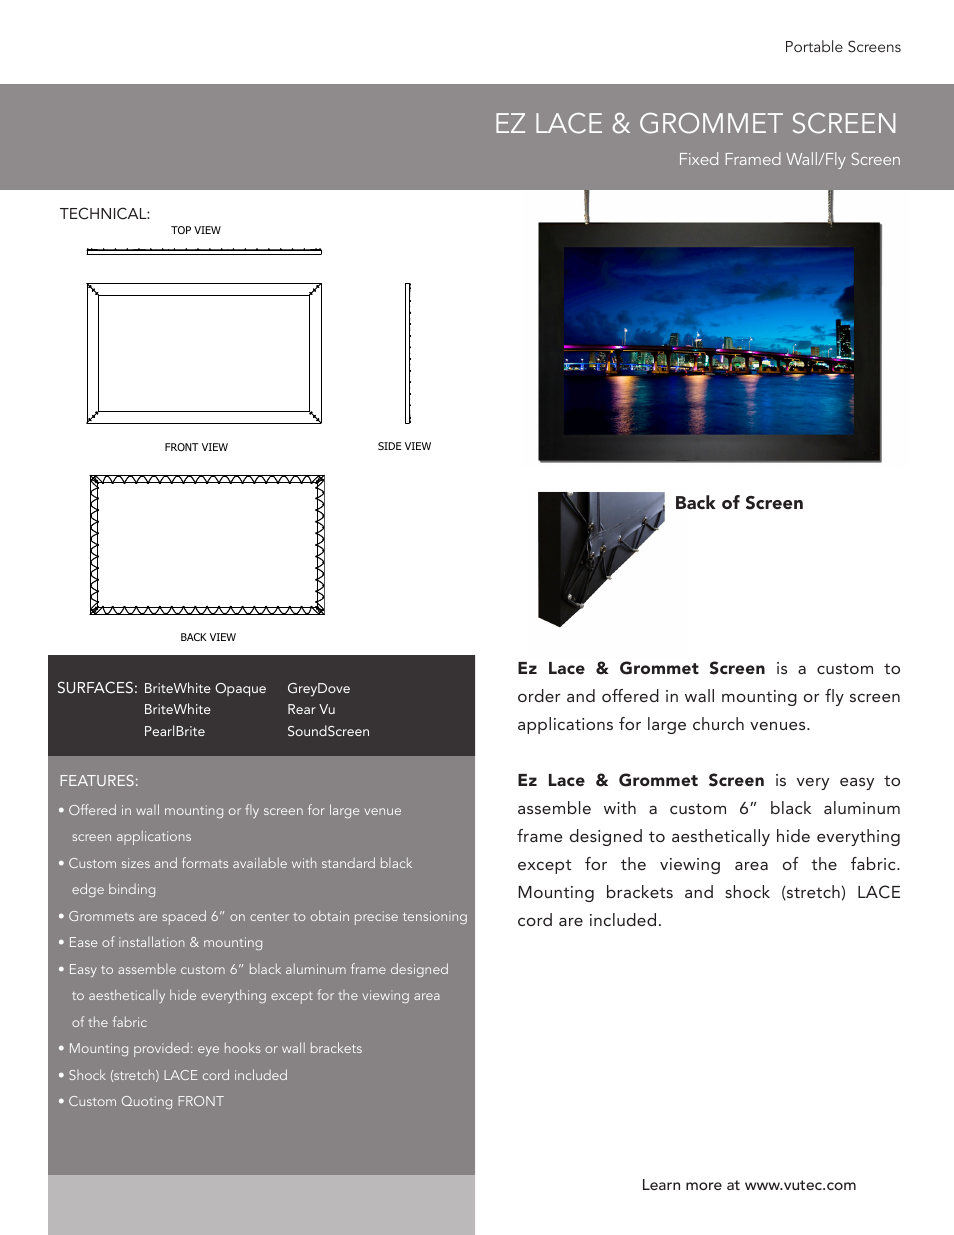 EZ LACE & GROMMET SCREEN - Product Sheet